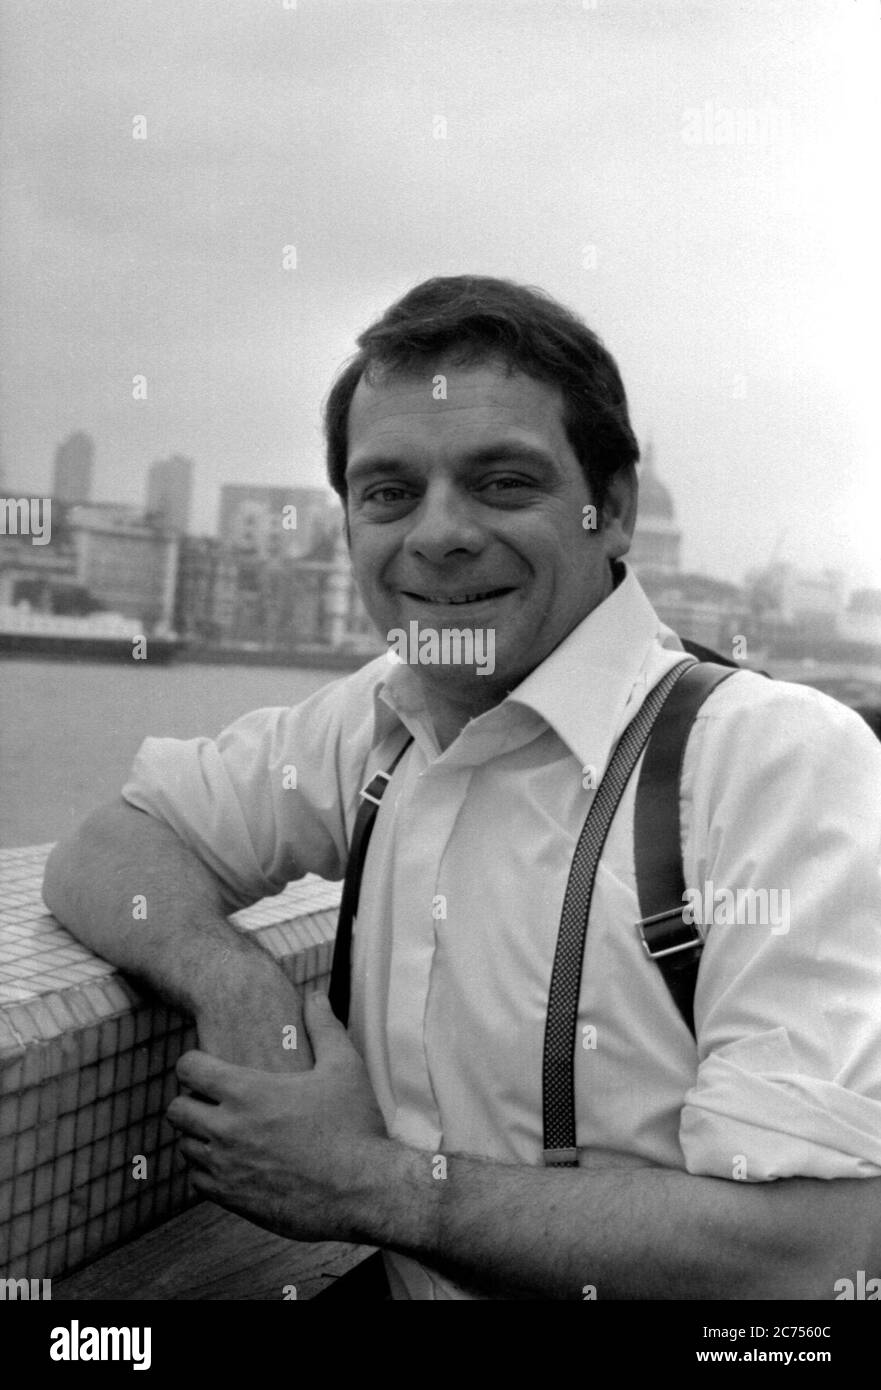 Schauspieler und Komiker David Jason, bekannt als Del Boy Trotter in Only Fools and Horses, posiert in London in den 1970er Jahren Stockfoto